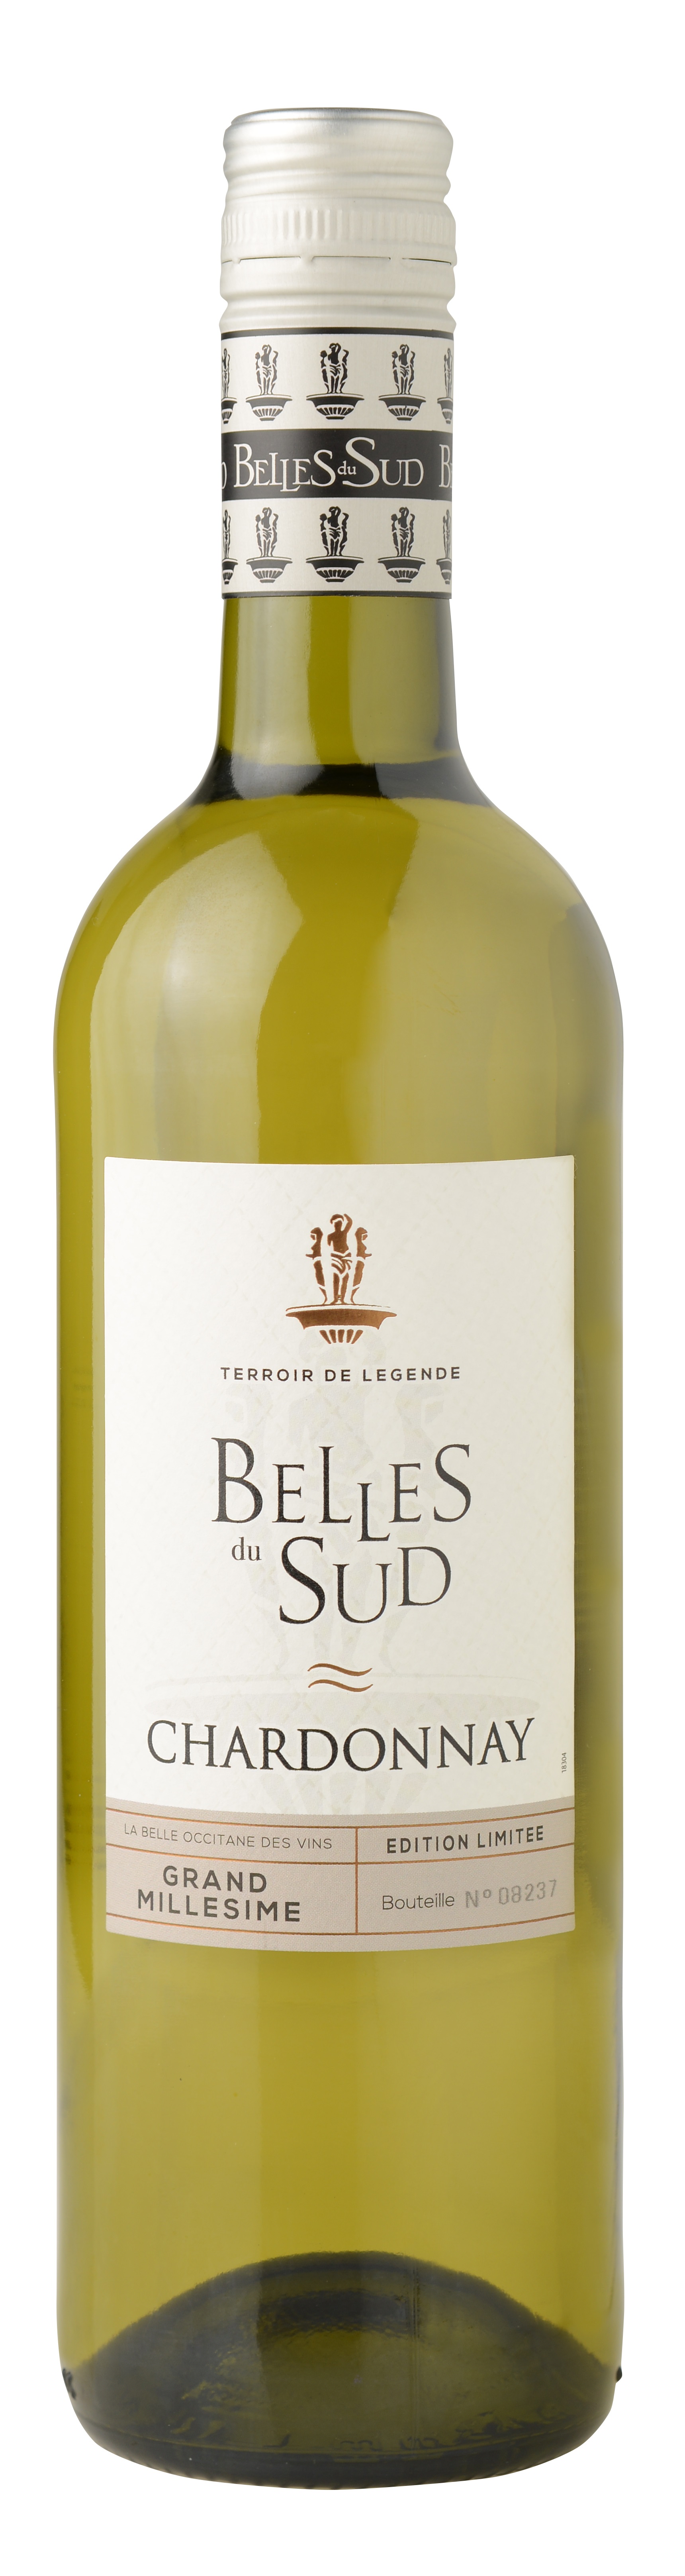 50744 Belles du Sud Chardonnay 2019 0,75 liter